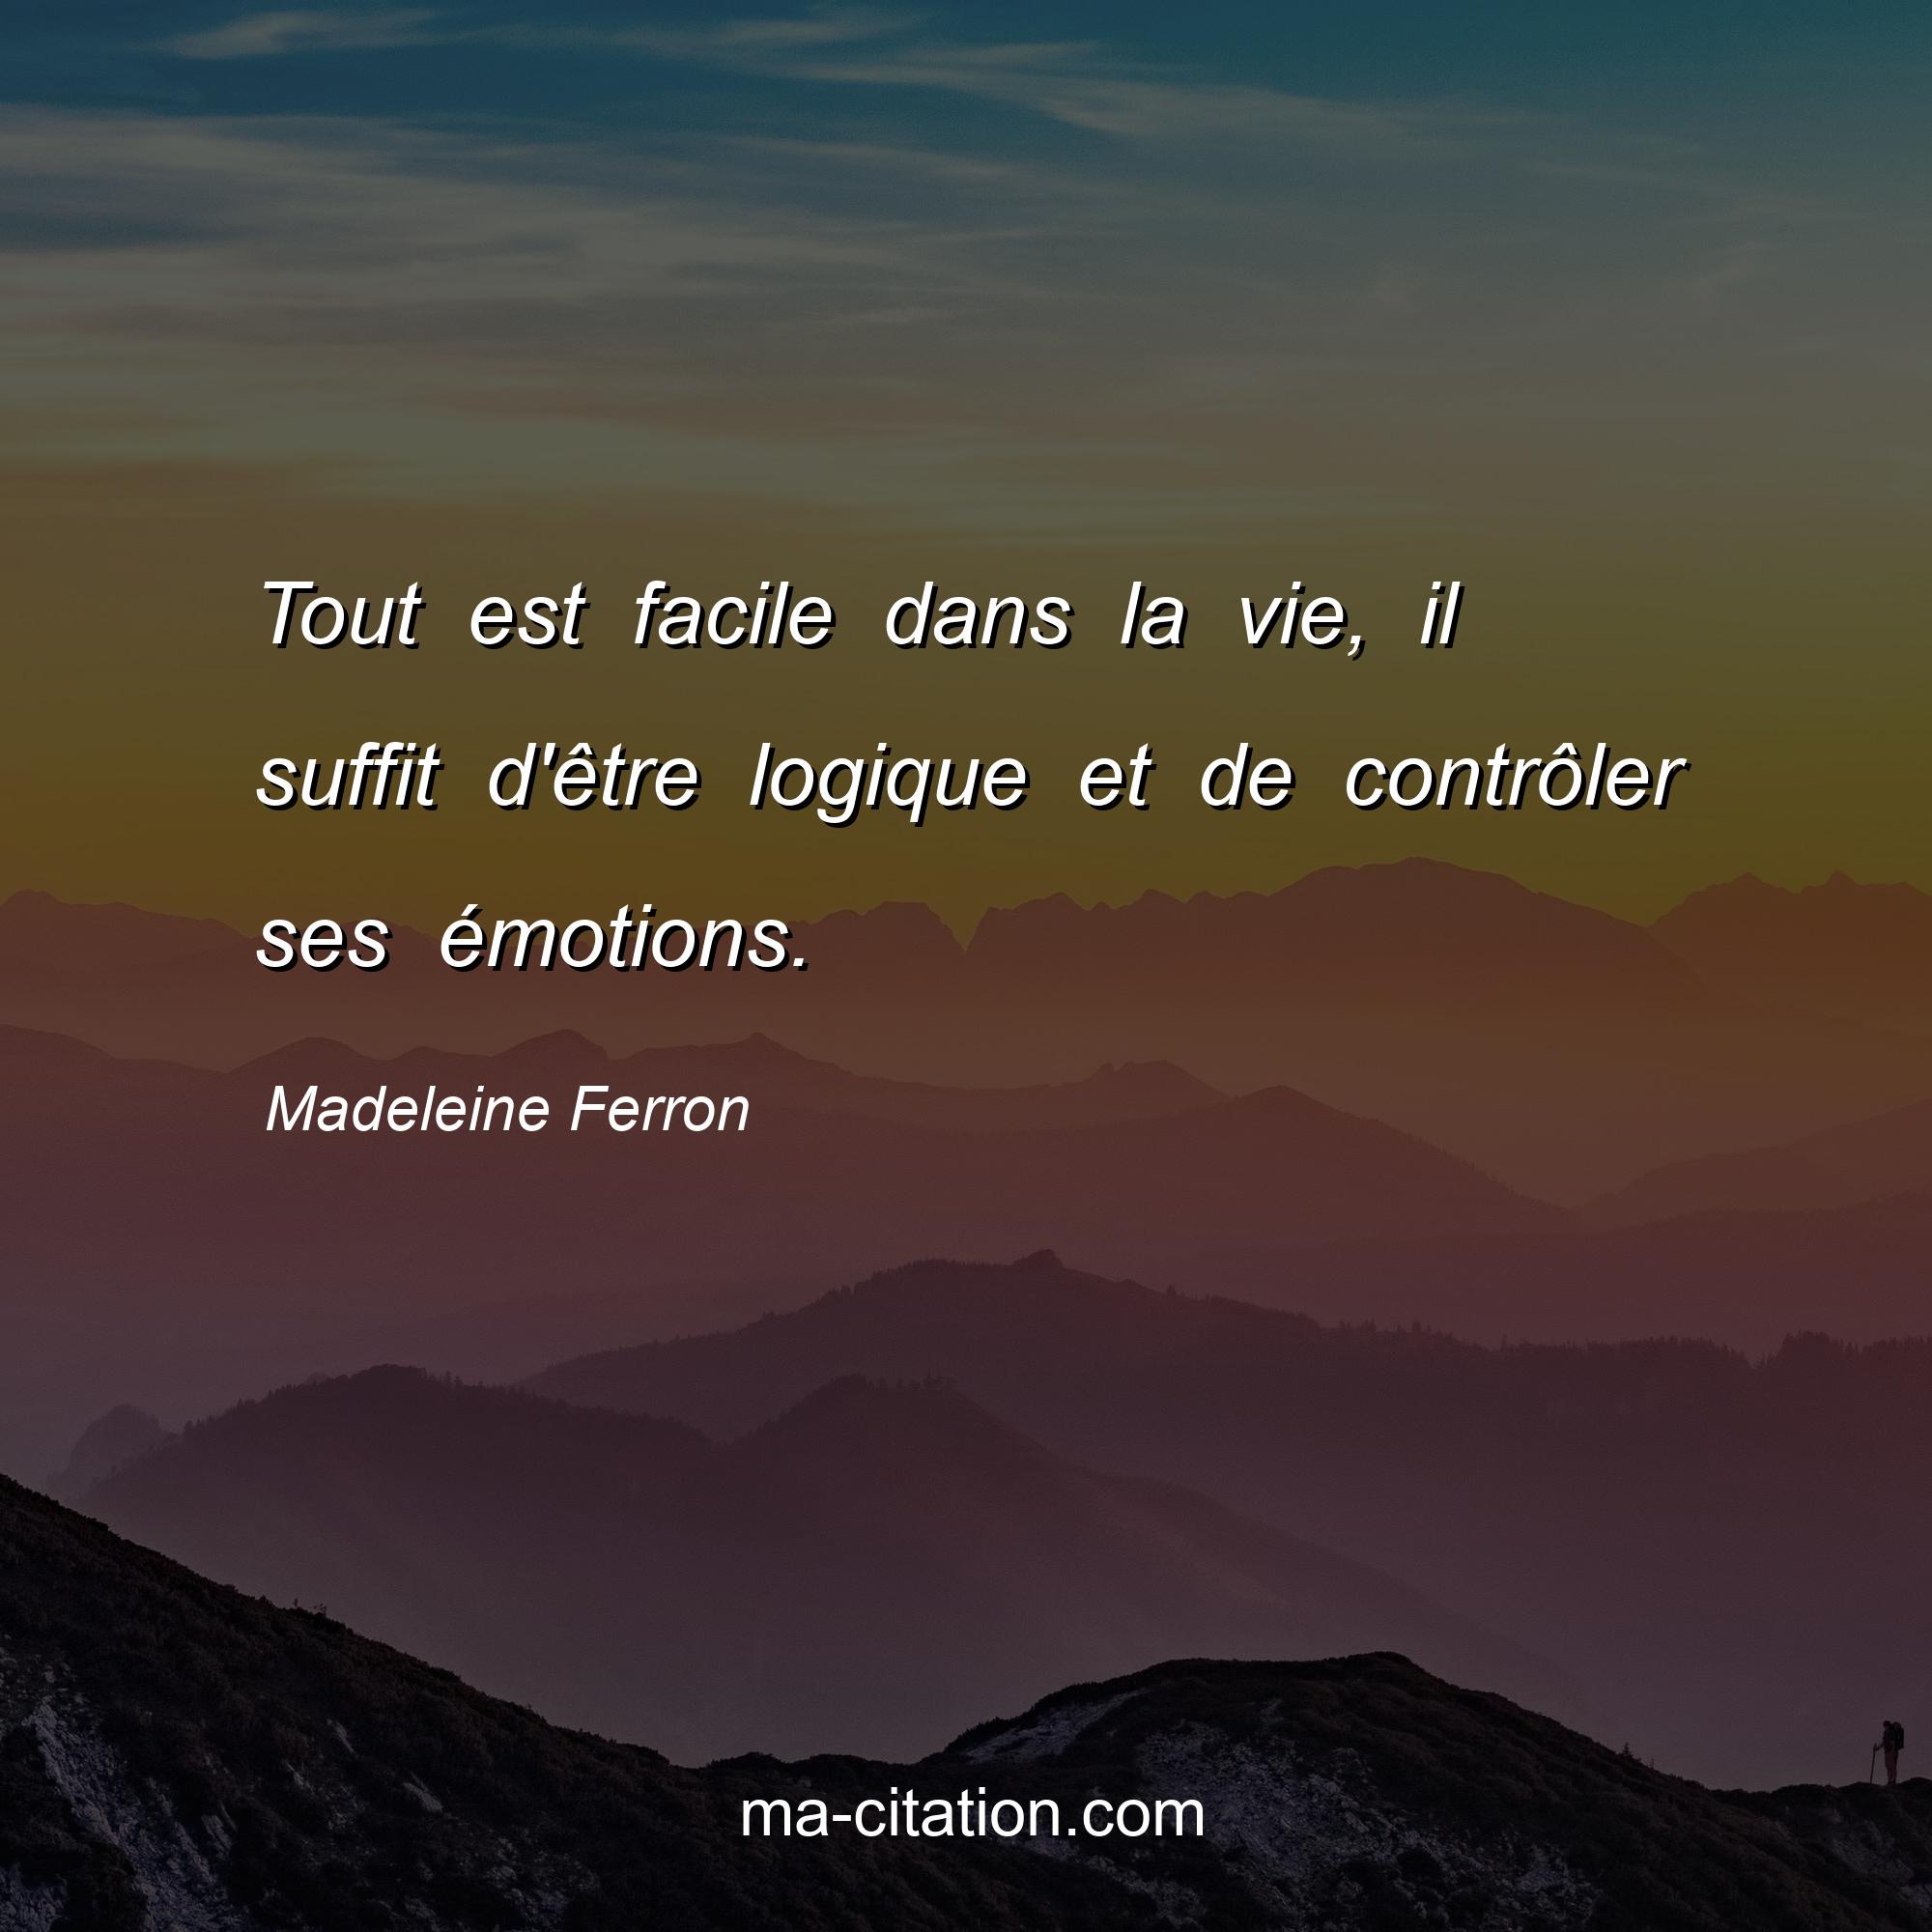 Madeleine Ferron : Tout est facile dans la vie, il suffit d'être logique et de contrôler ses émotions.